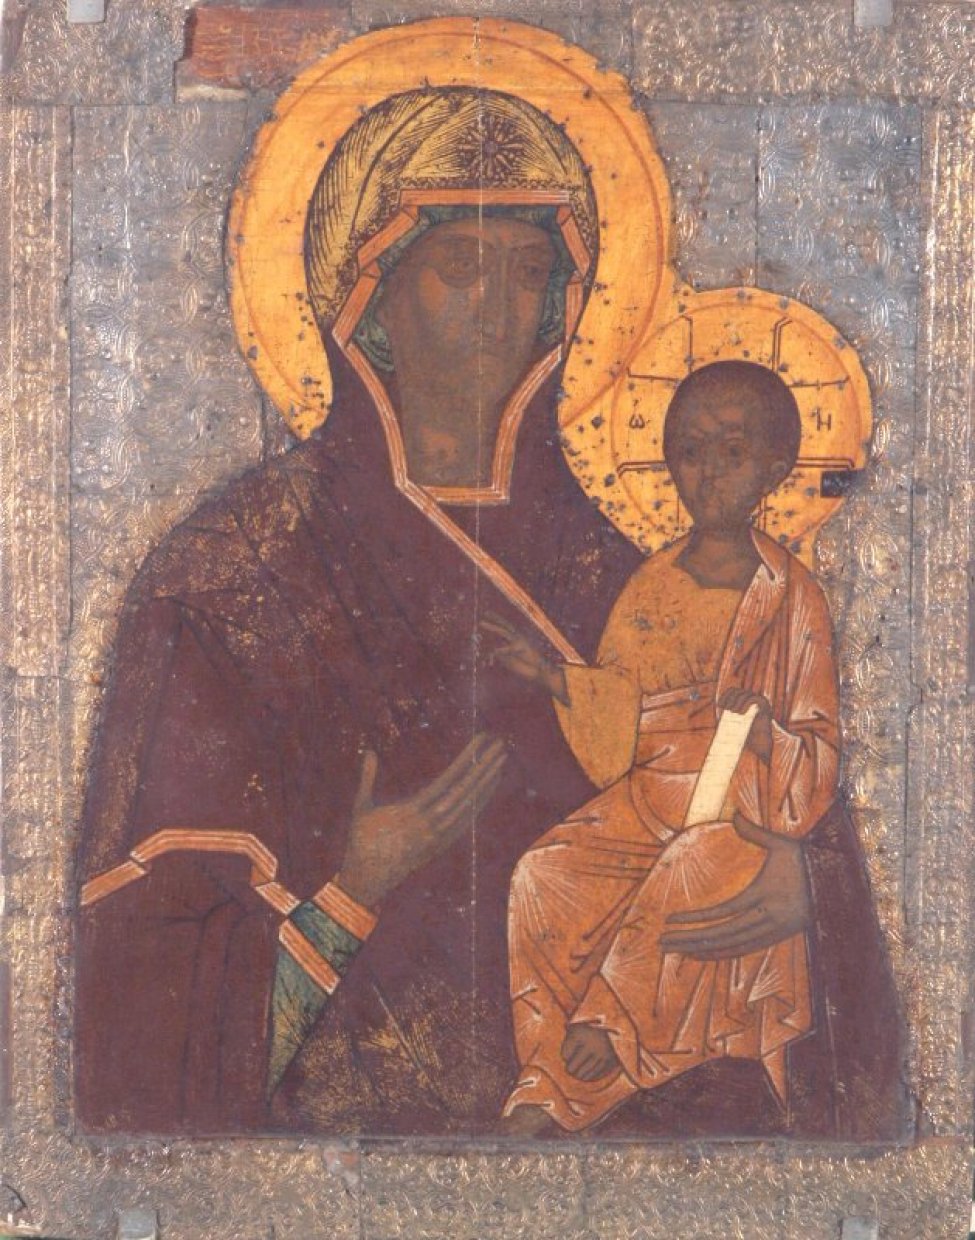 Изображена Богоматерь с младенцем, одетая в темно-красную с золотом одежду. Одежды Христа светло-желтые, прописанные белым. Икона с выемкой.